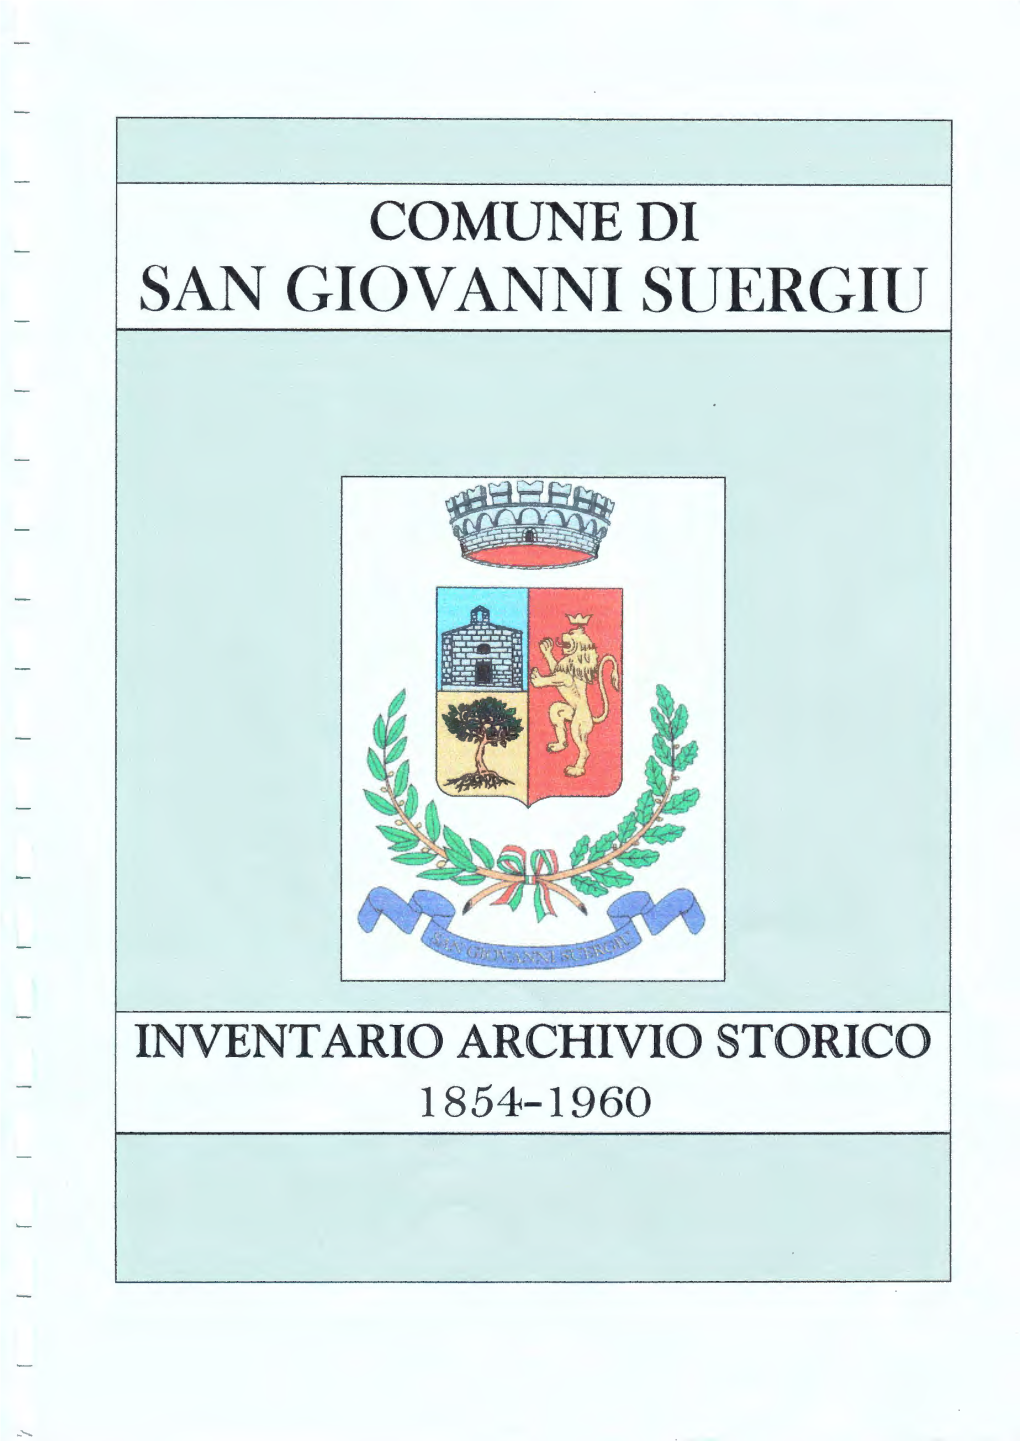 San Giovanni Suergiu